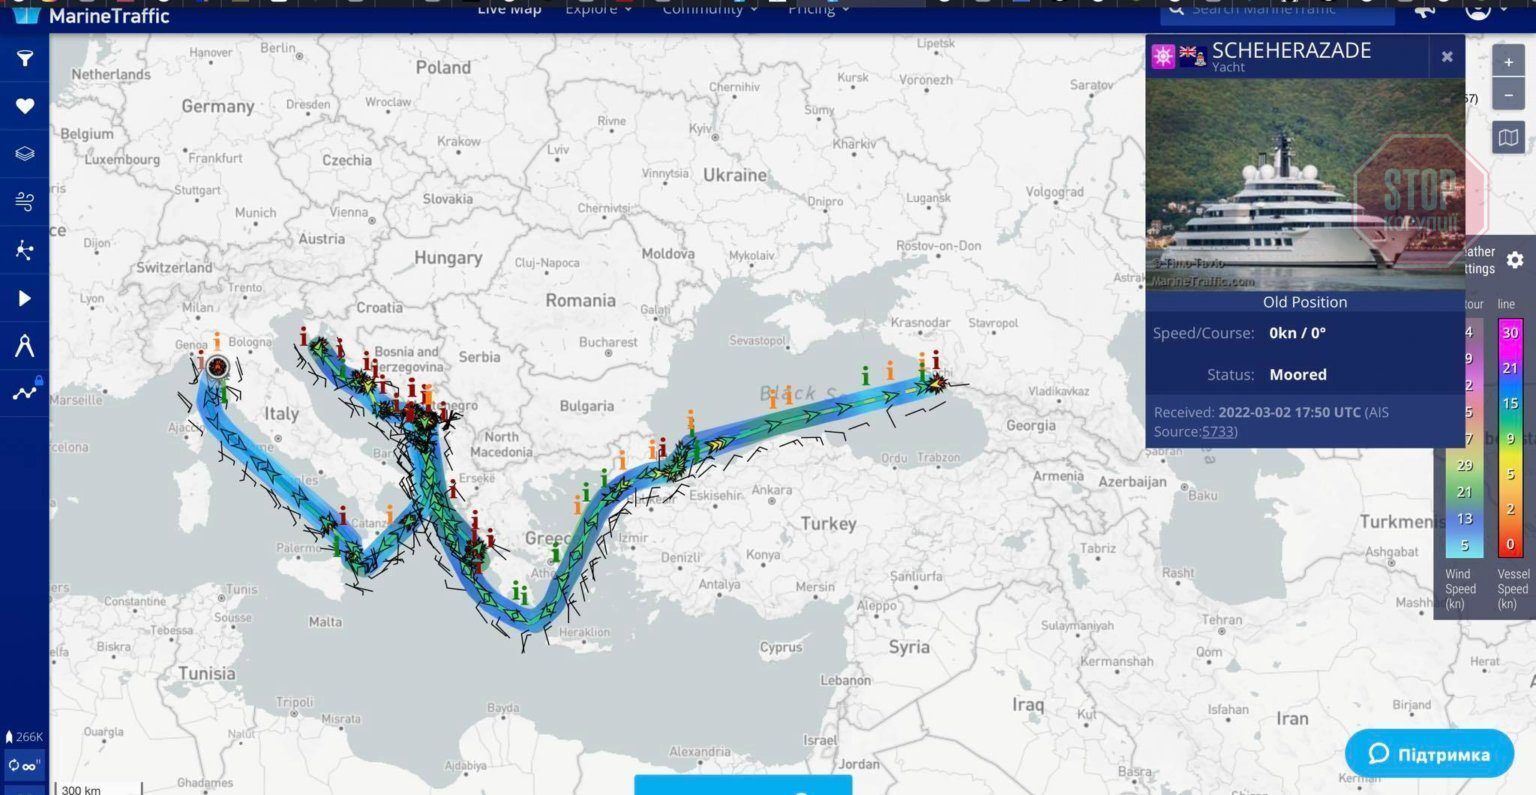  Згідно з даними Marine traffic, “Шехерезада” була в Сочі 7 днів, із 1 по 7 липня 2021 року. Це може свідчити на користь версії, що яхта належить Путіну Фото: УП